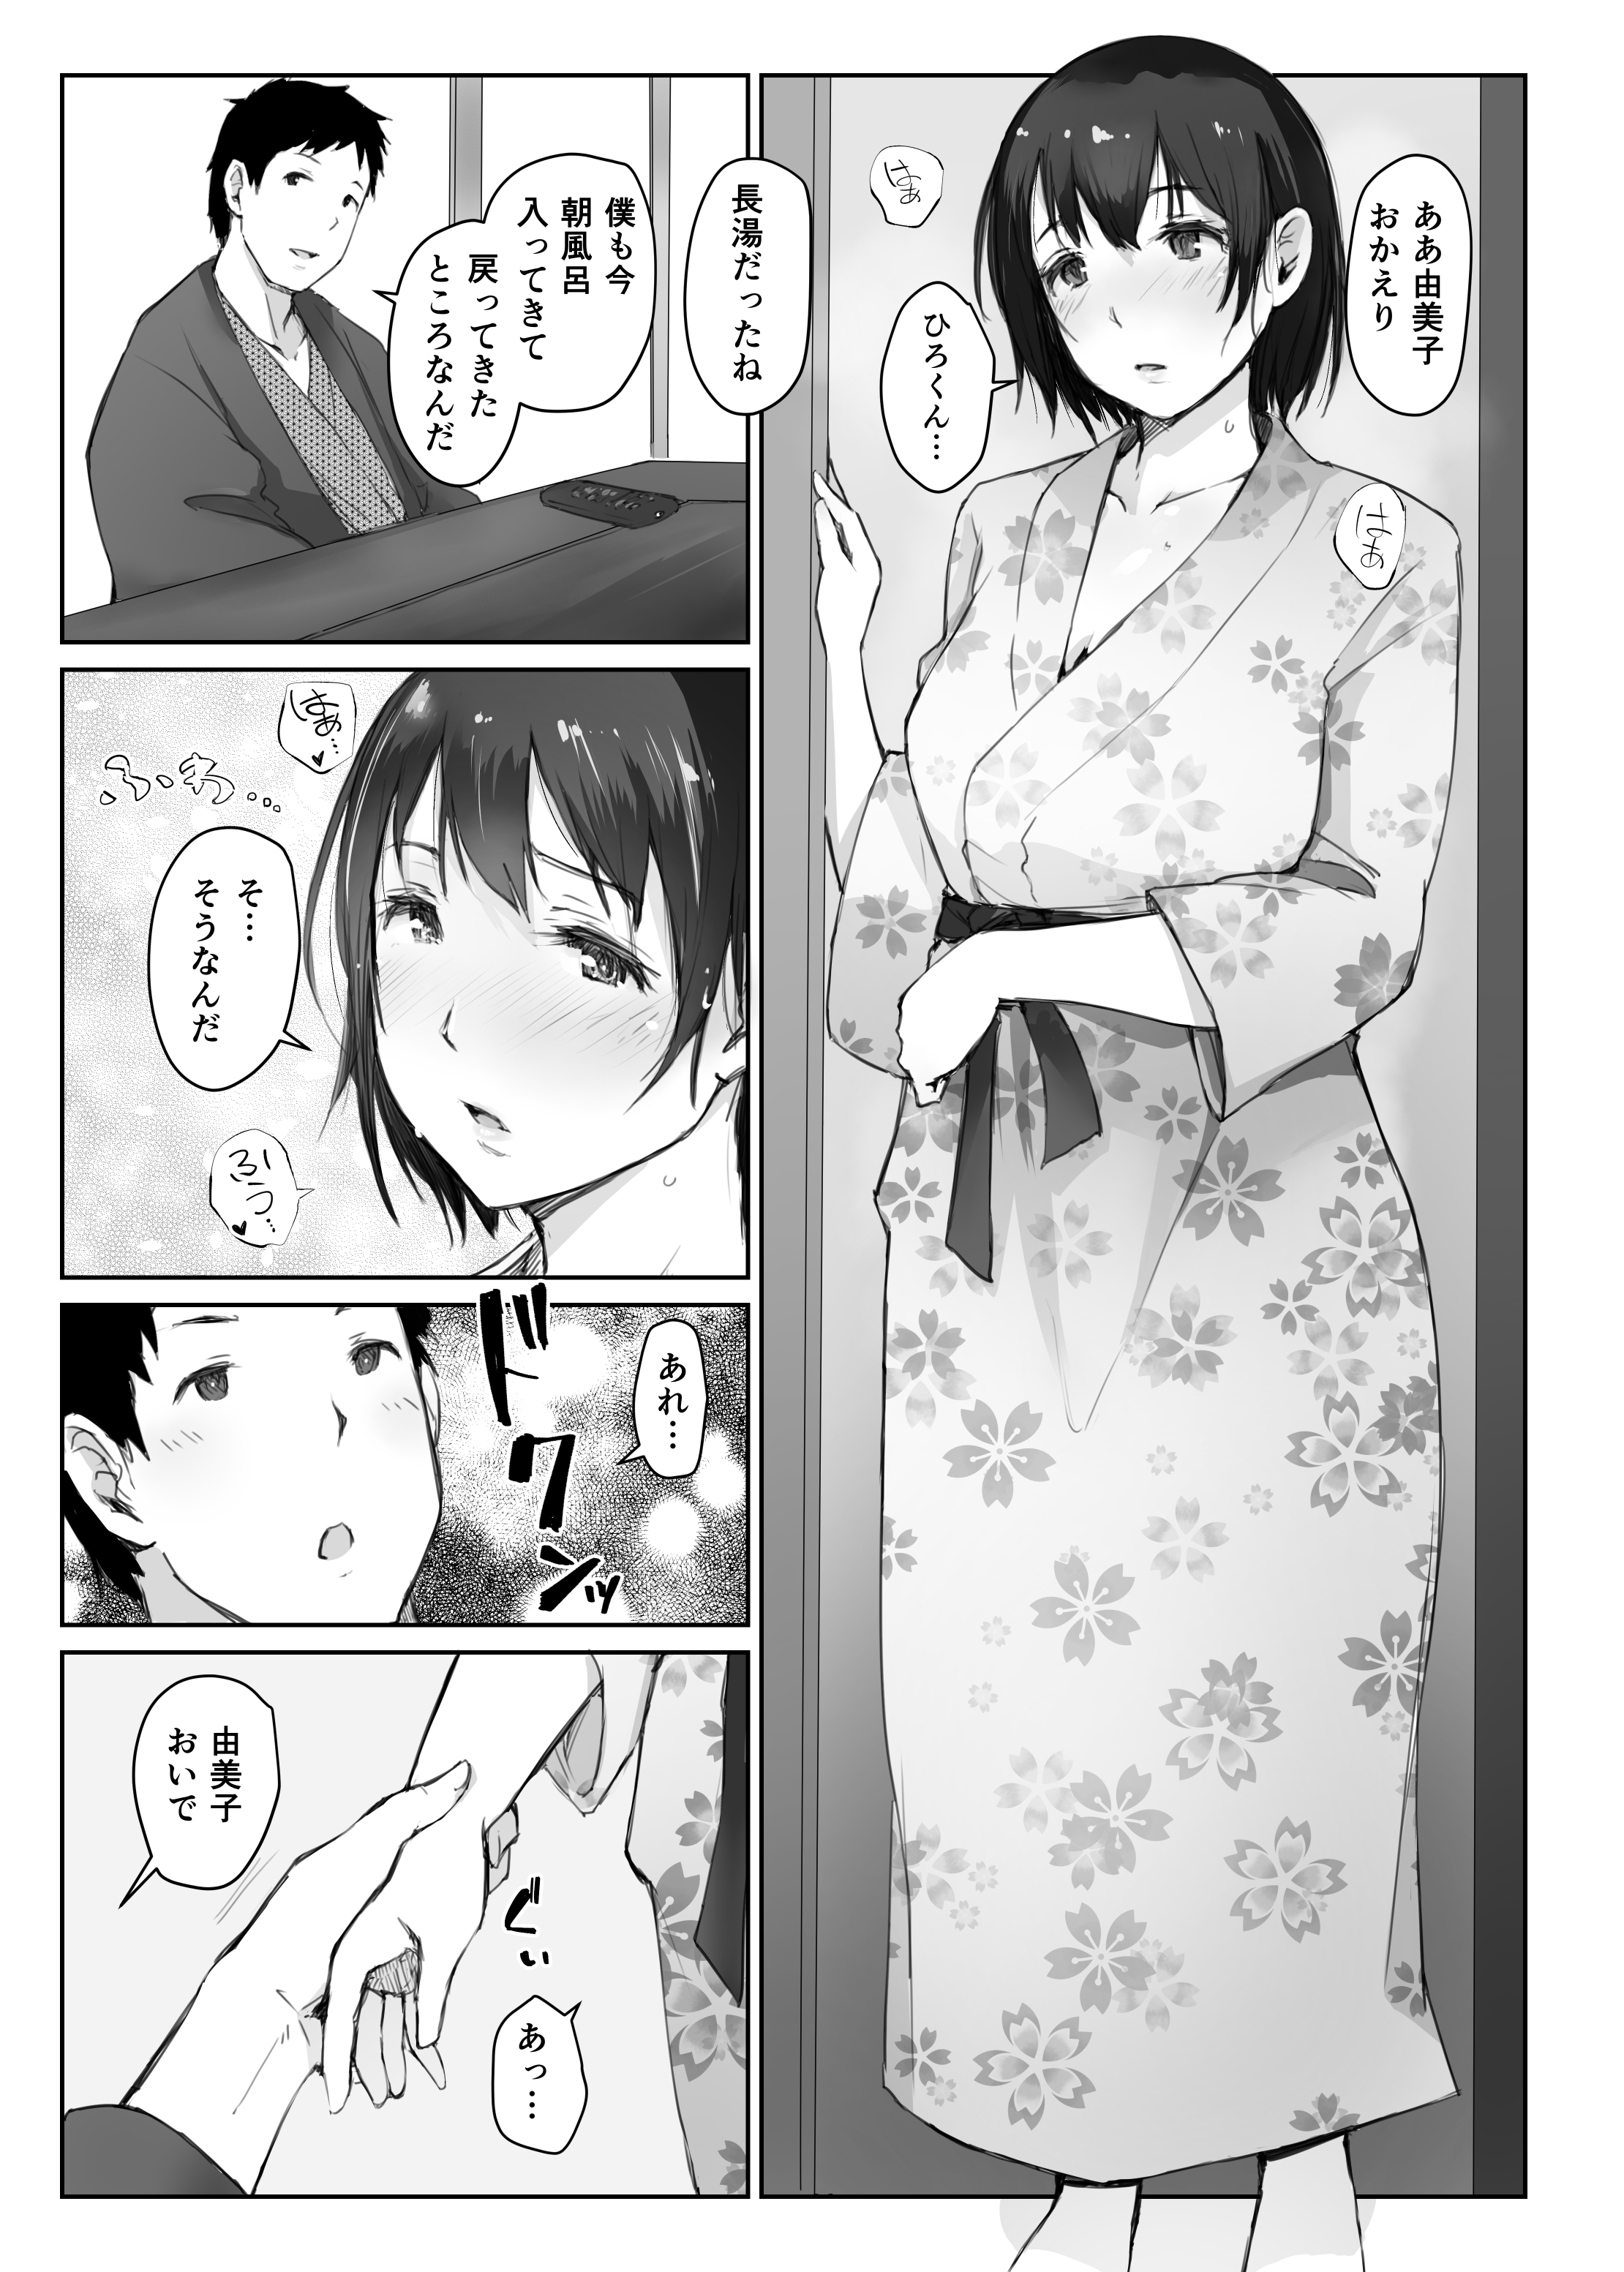 【オリジナル】人妻の由美子さんが旅行先でおじさんに寝取られて中出しをキメられてしまう…。の画像4枚目